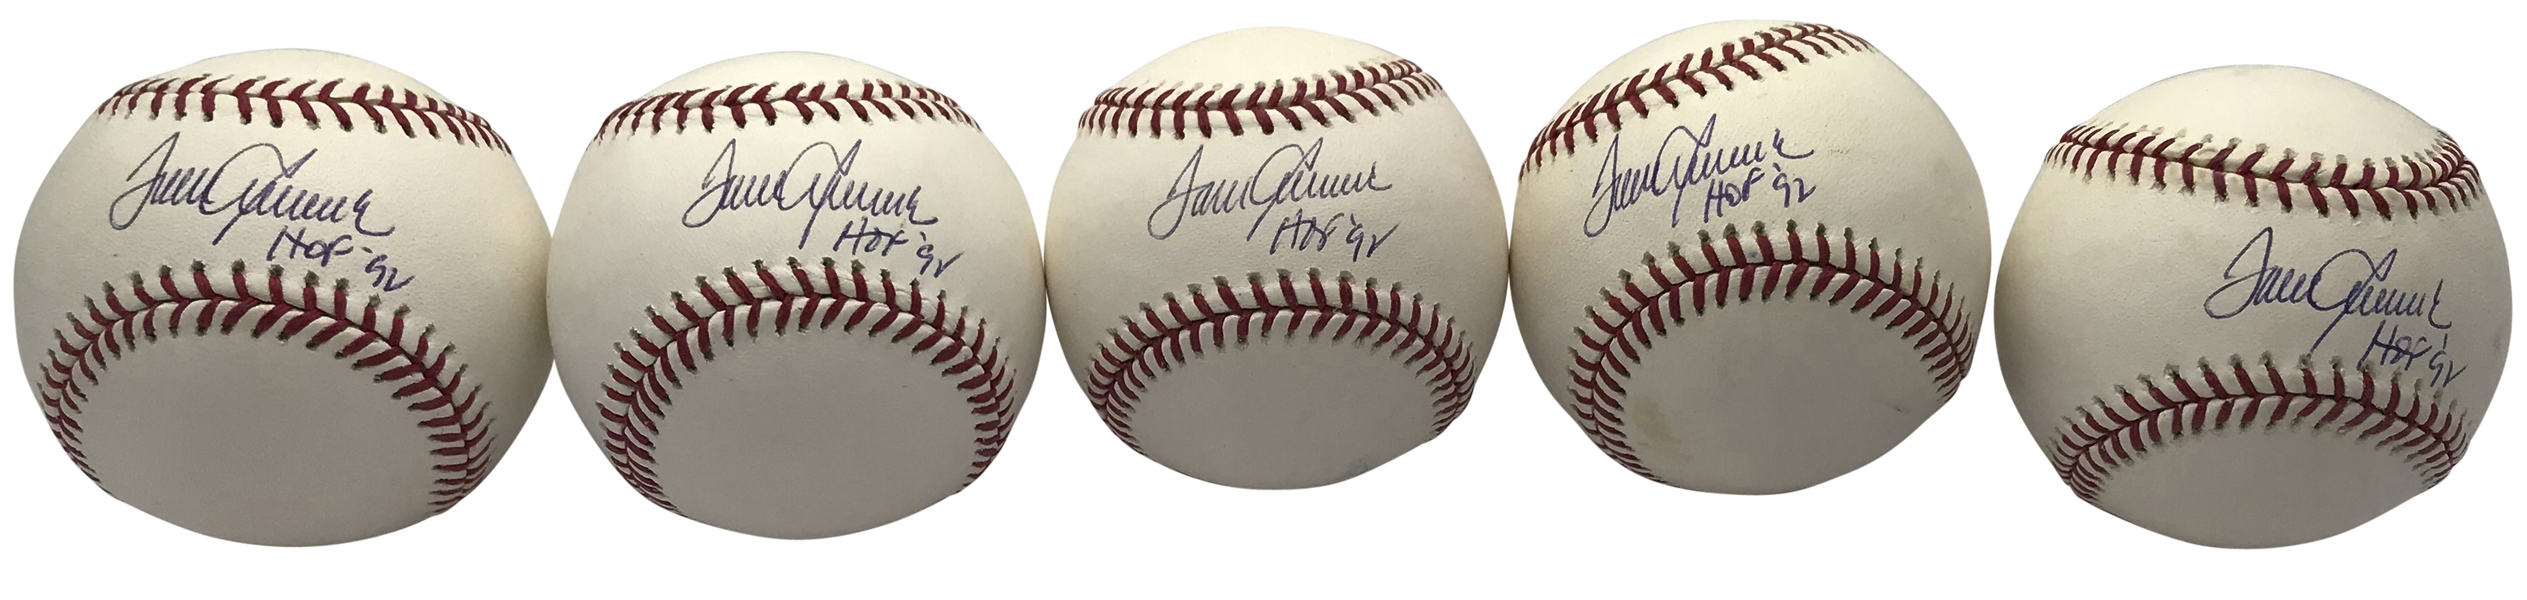 Lot of Five (5) Tom Seaver Signed & Inscribed "HOF 92" OML Baseballs (PSA/DNA)